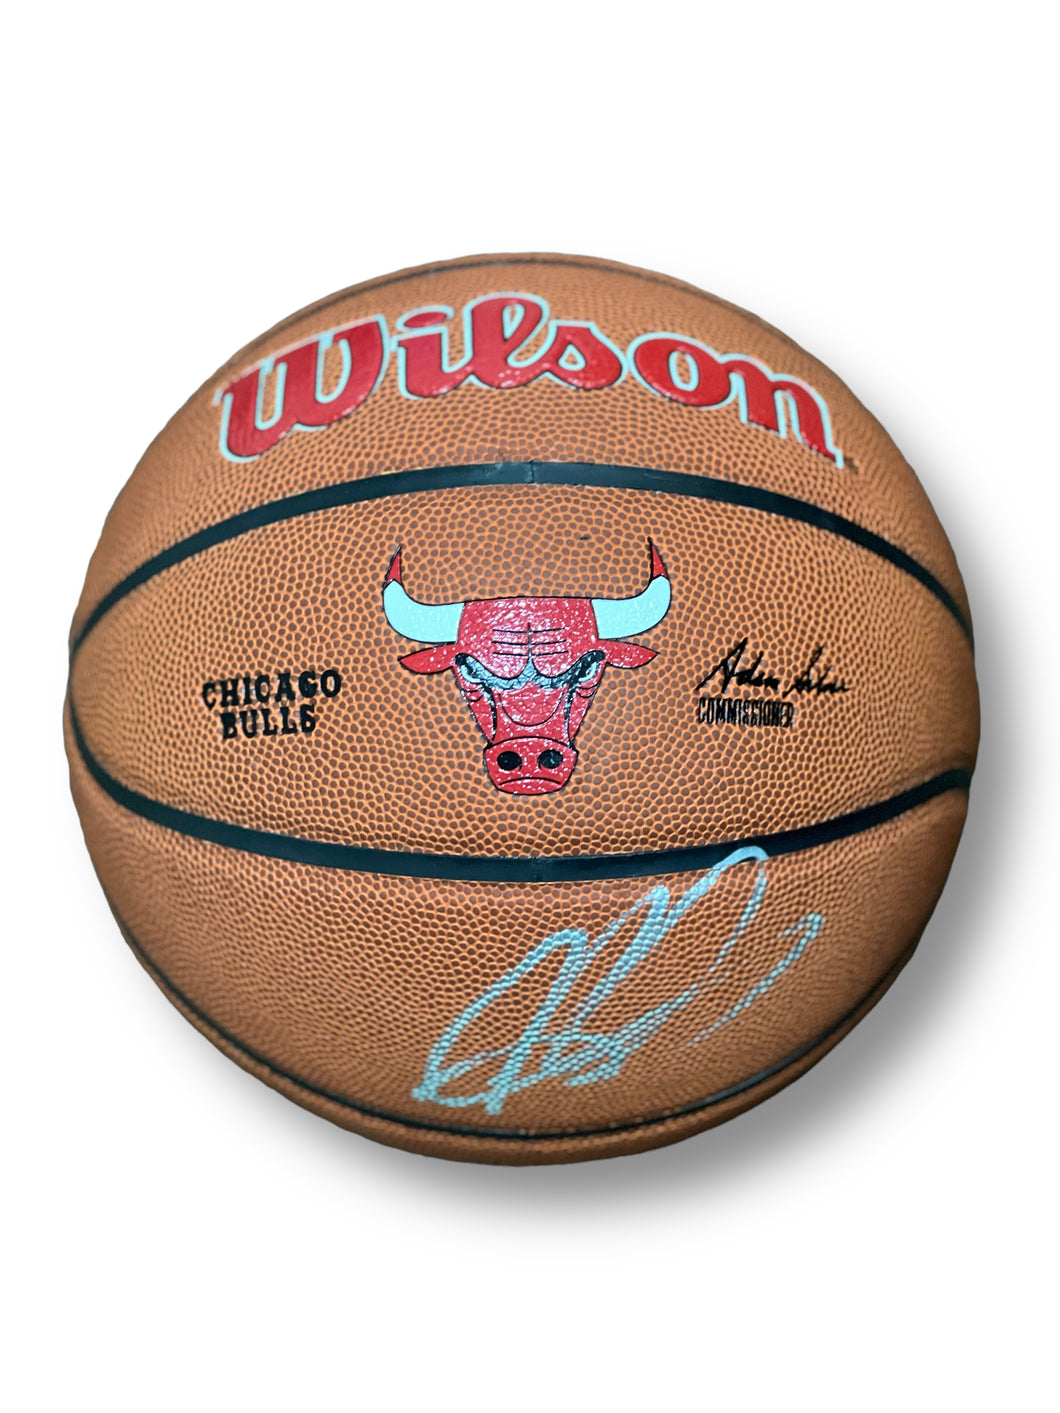 Balón / Bulls / Dennis Rodman